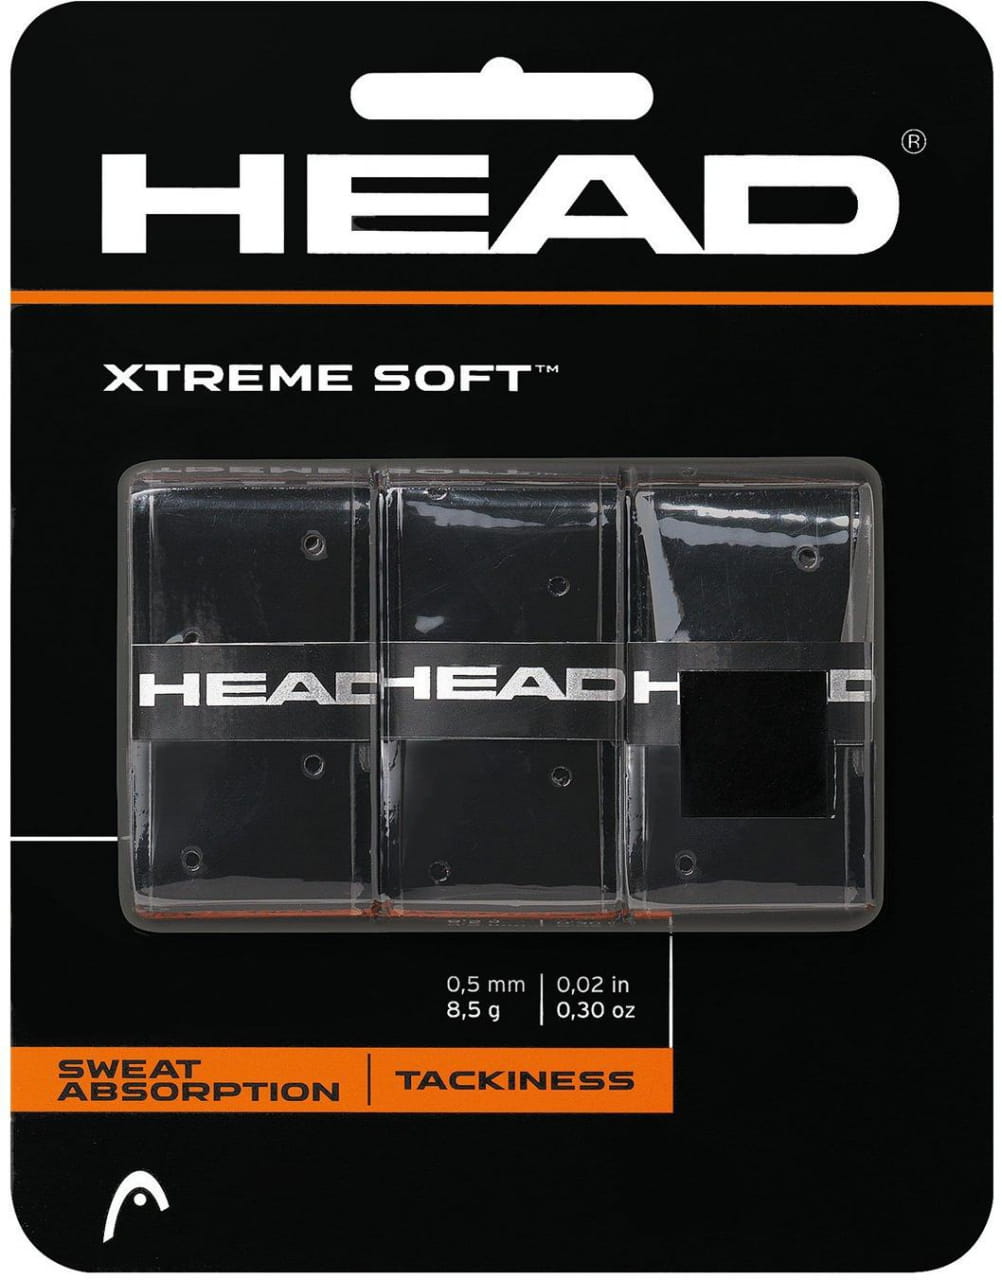 Tenisz csomagolópapír Head XtremeSoft Grip 3 pcs Pack